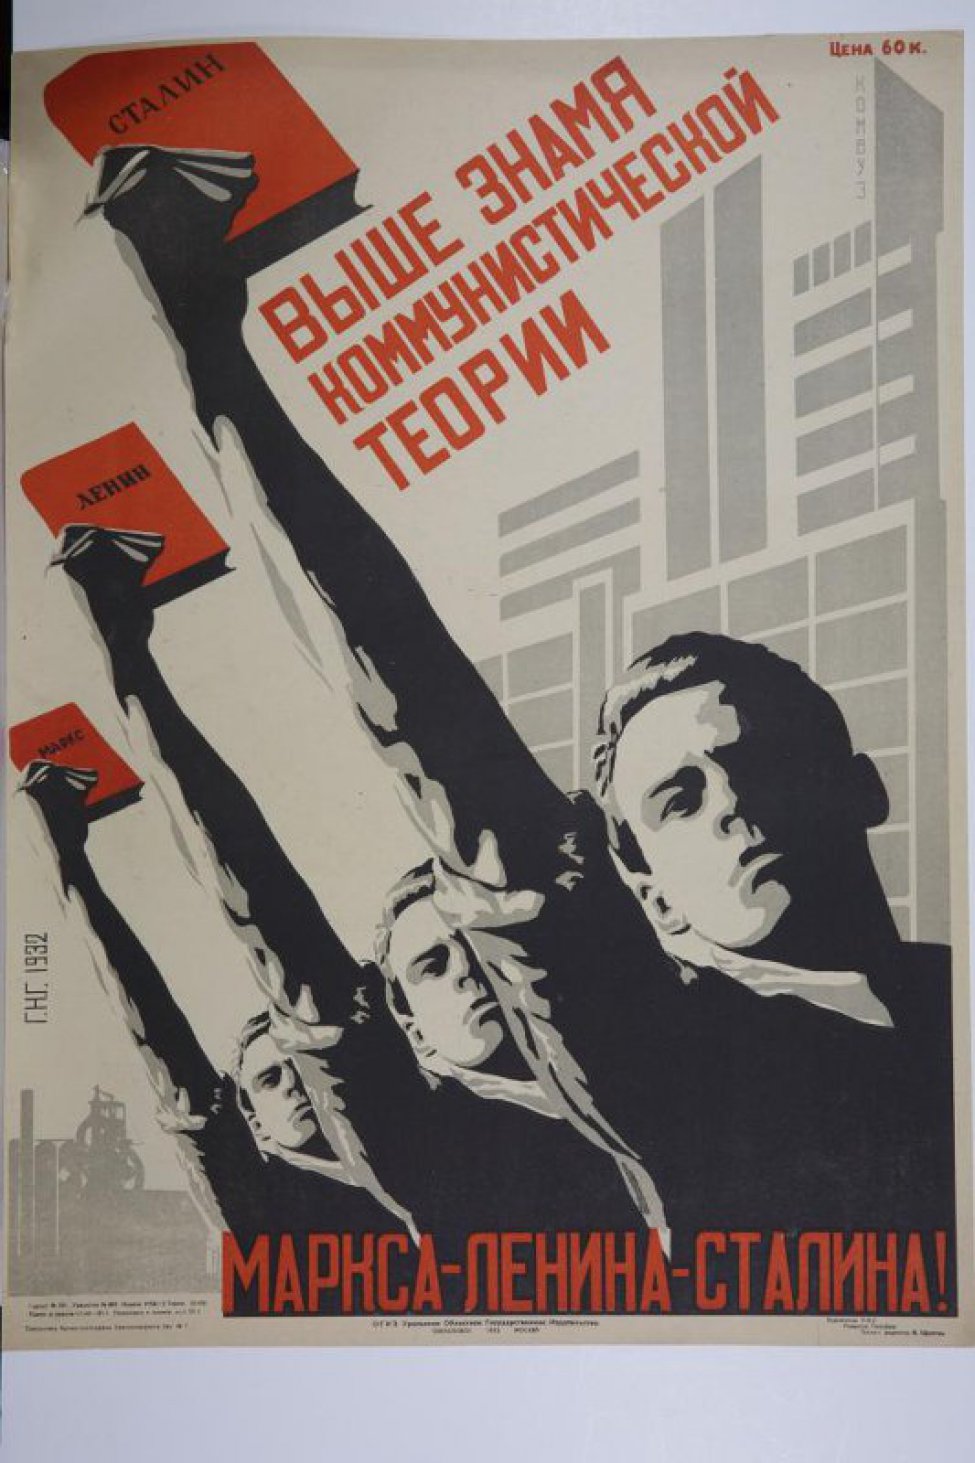 Изображены трое мужчин с поднятыми вверх руками, в которых сочинения Маркса,Ленина и Сталина.Позади здание Комвуза.